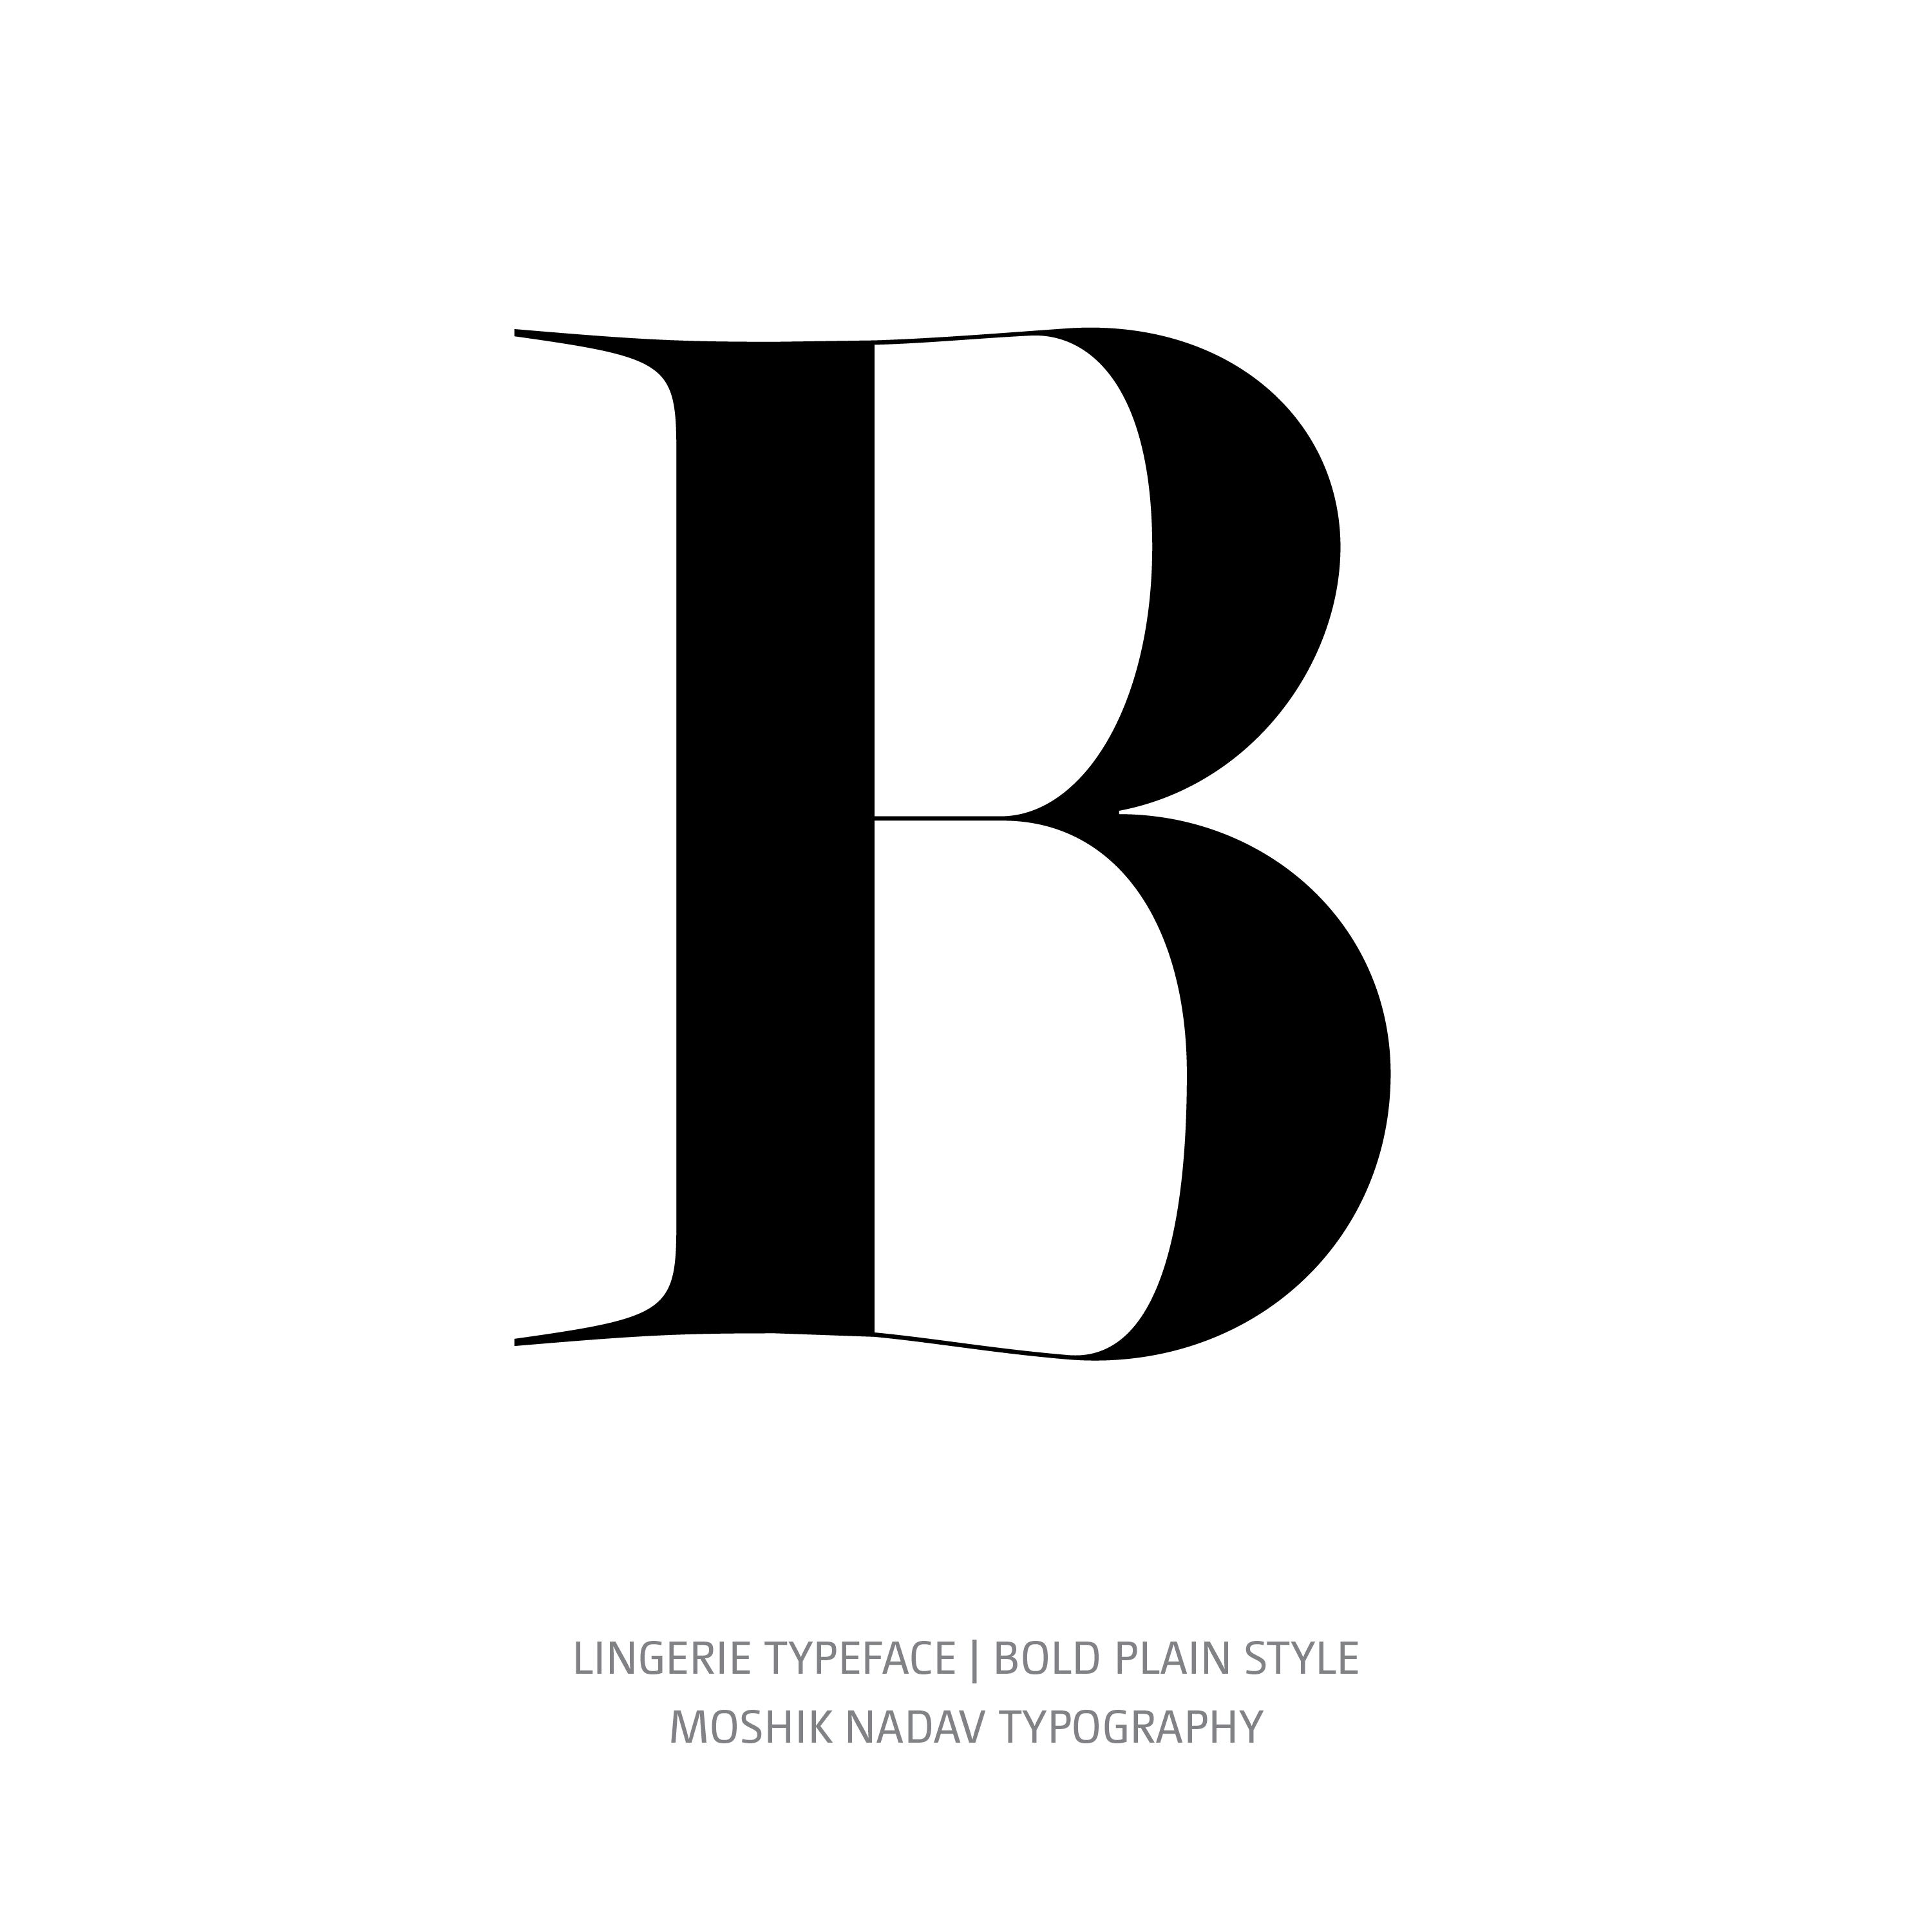 Lingerie Typeface Bold Plain B